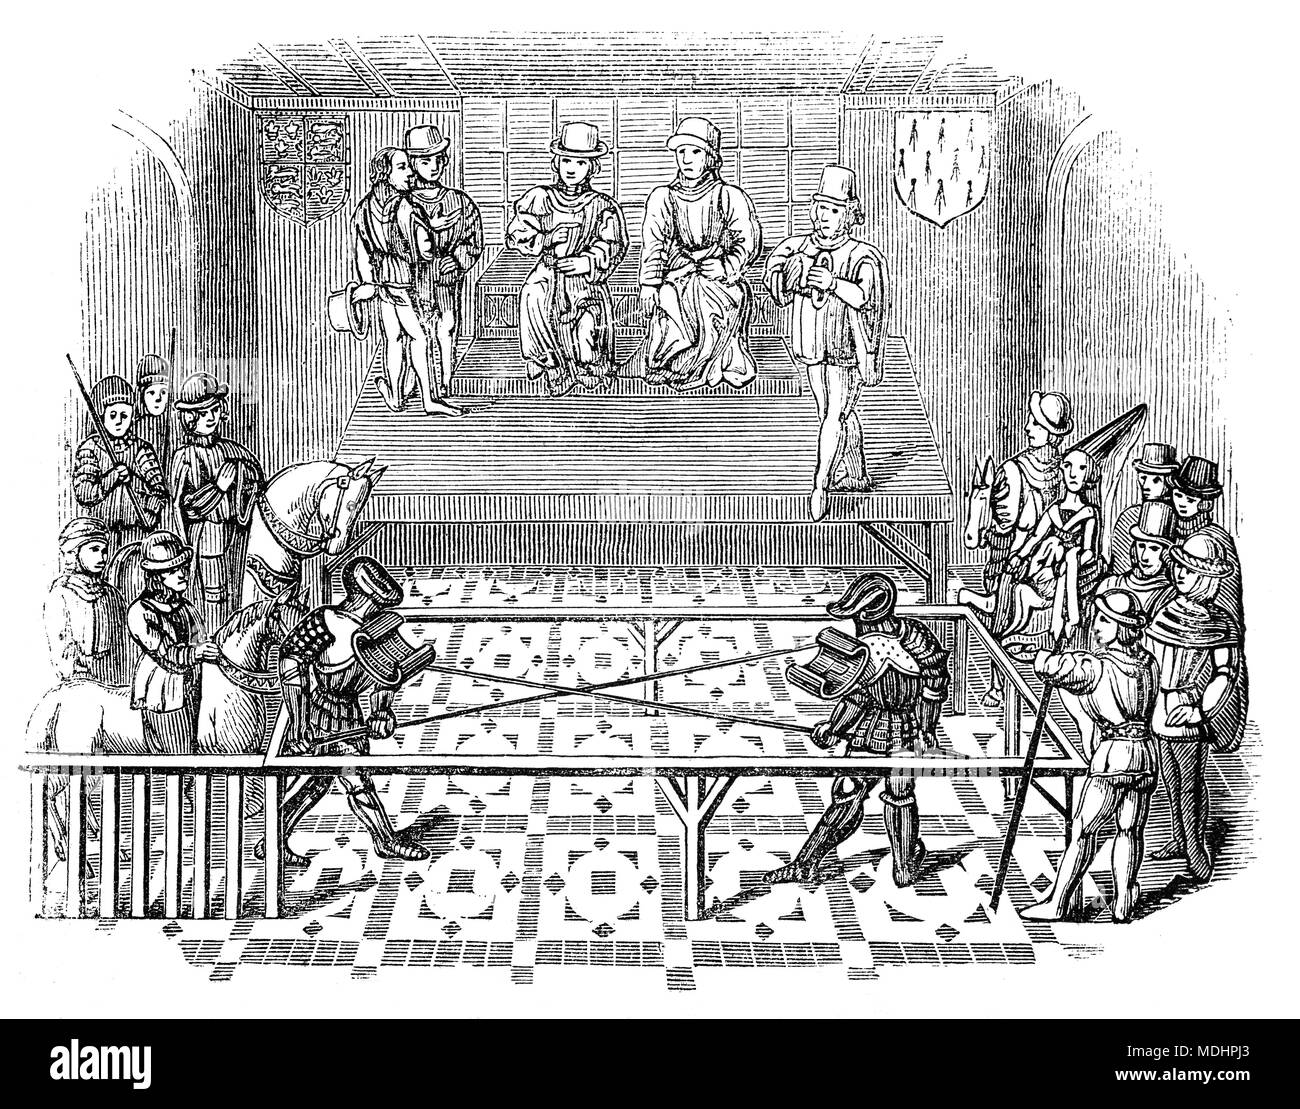 Bertrand du Guesclin (1320 - 1380) qui participent à les laisser à un tournoi. Il a été 'aka l'Aigle de la Bretagne" ou "le chien noir de Brocéliande", était un chevalier Breton et commandant militaire français pendant la Guerre de Cent Ans. Il fut connétable de France de 1370 à sa mort. Banque D'Images